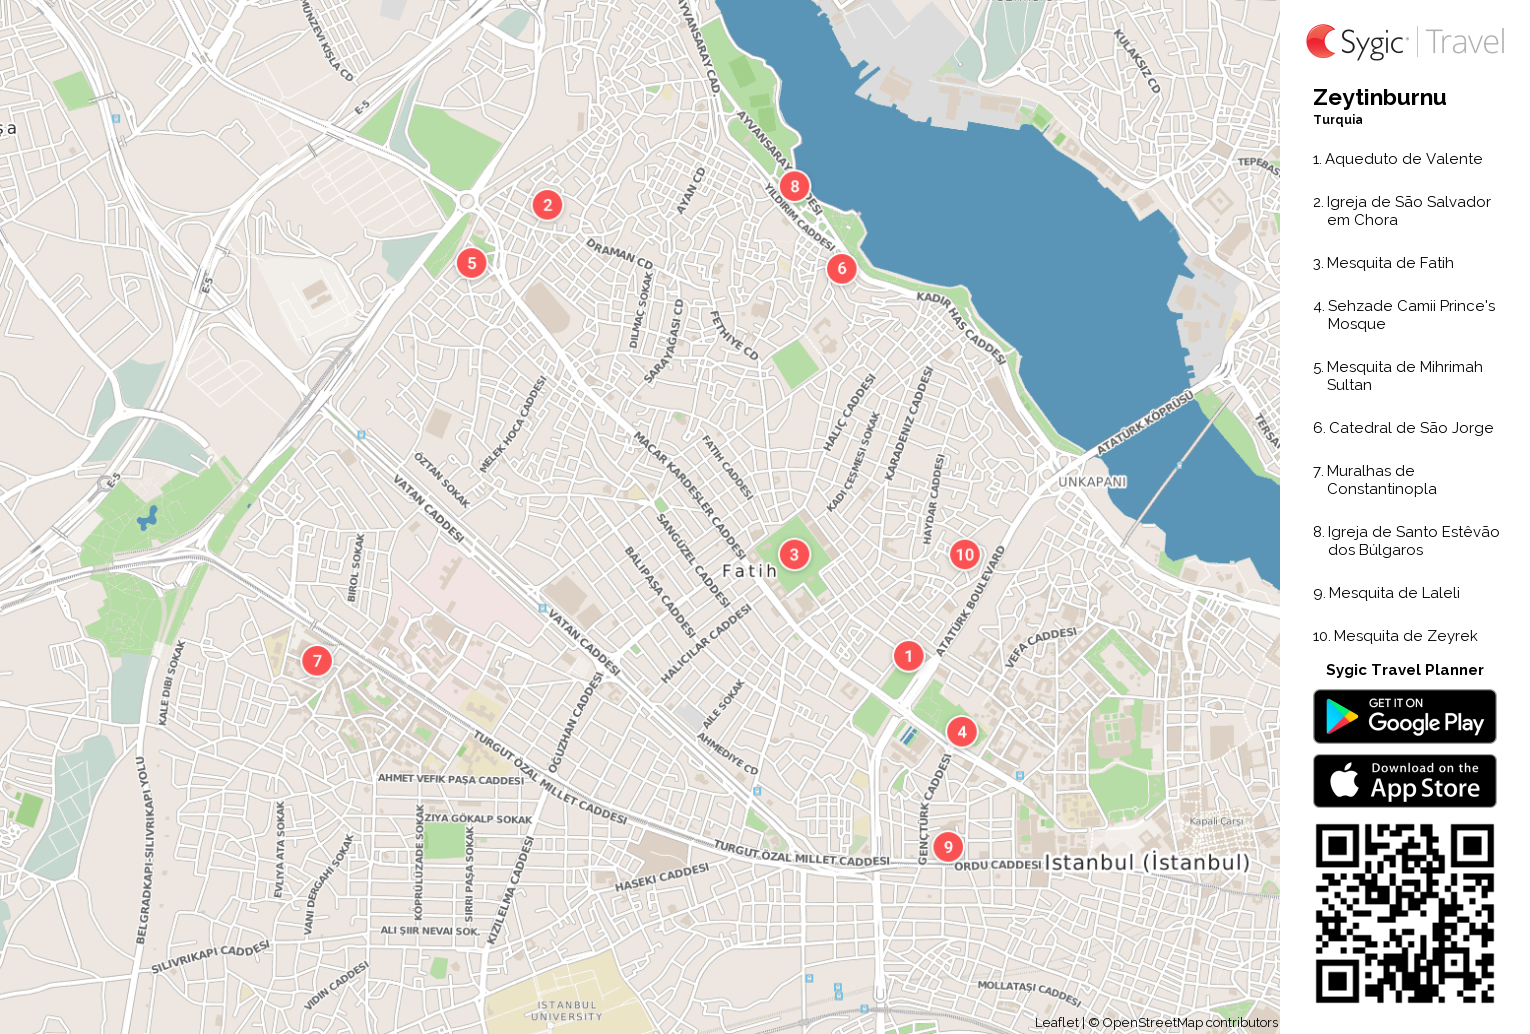 zeytinburnu-mapa-turistico-em-pdf